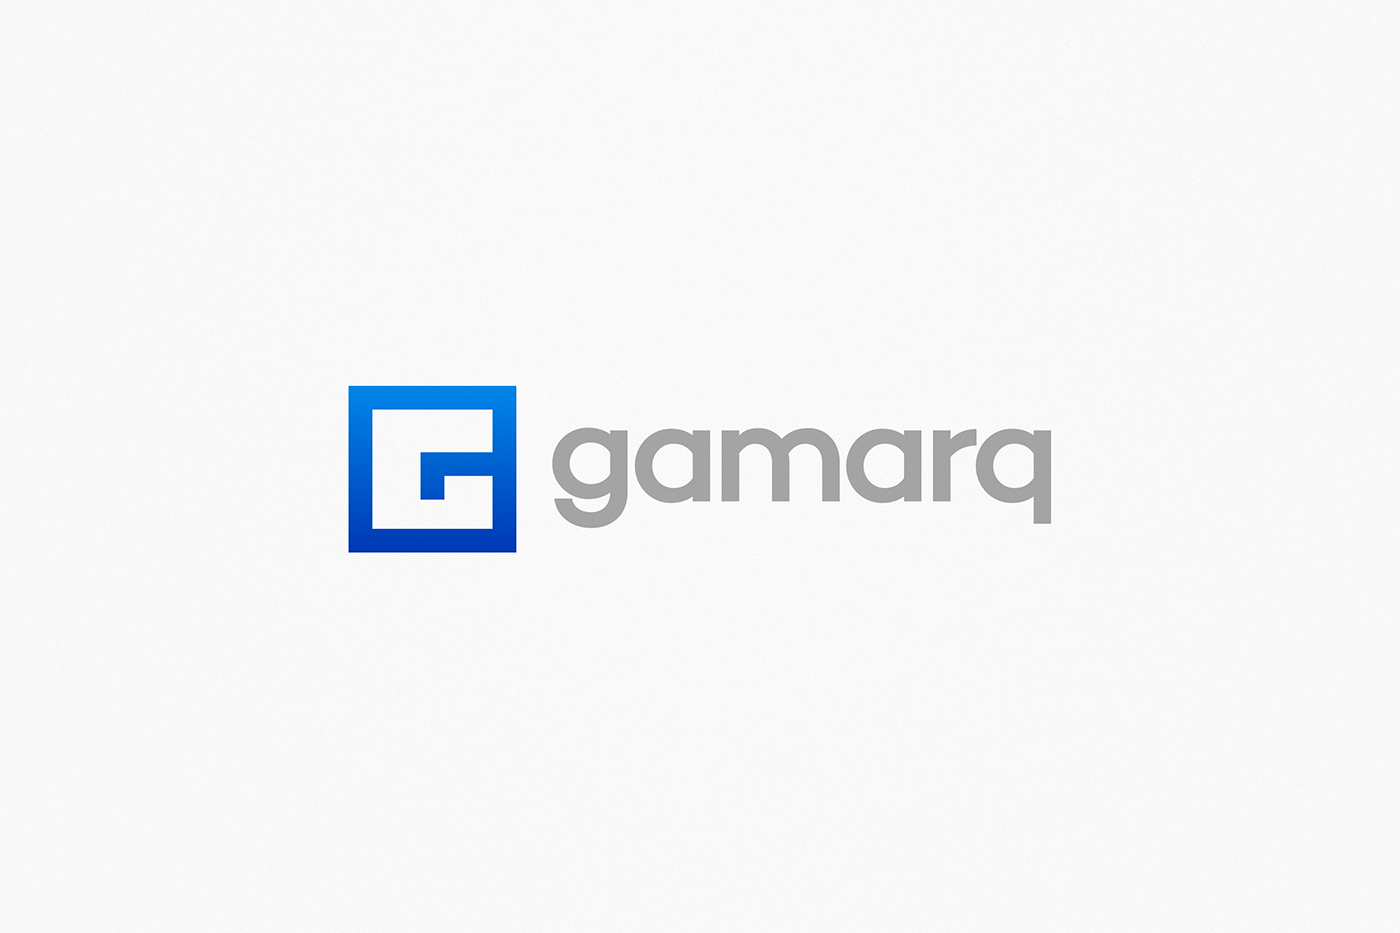 gradient logo interiorism brand gamarq